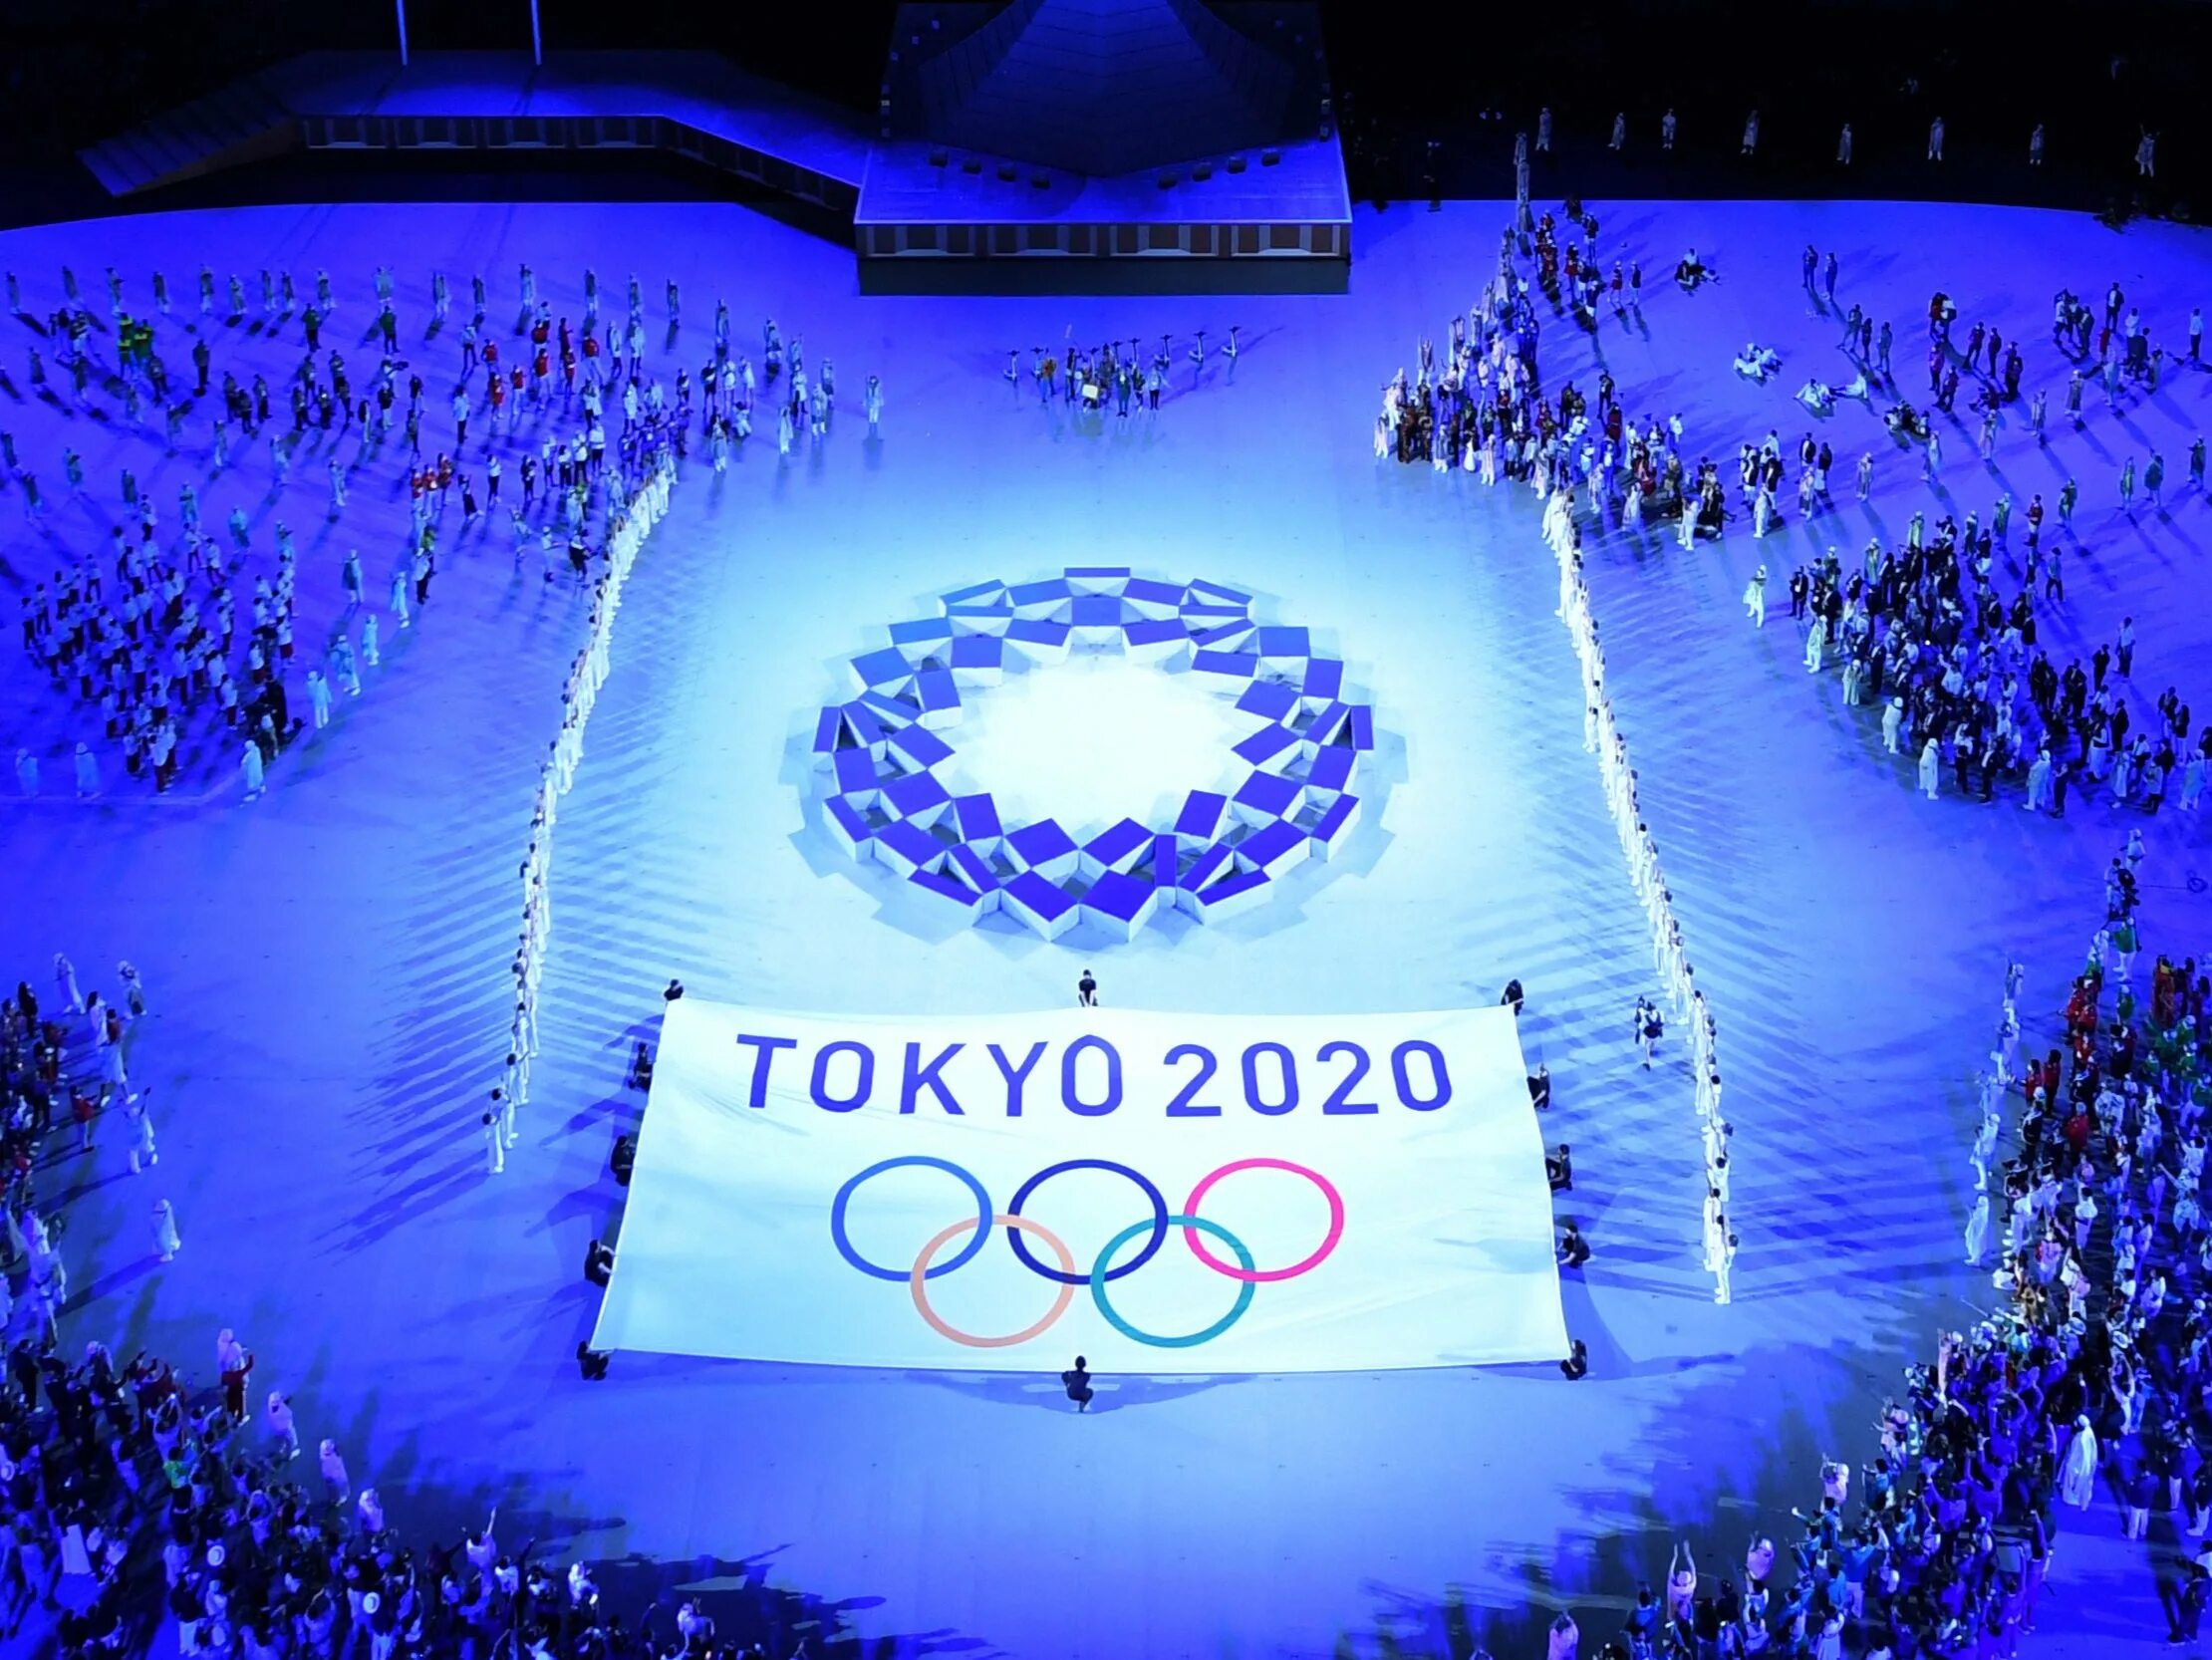 Tokyo 2020 game. Олимпийские игры в Токио 2020. Летние Олимпийские игры 2020 года. Стадион Токио 2020 Олимпийских игр.